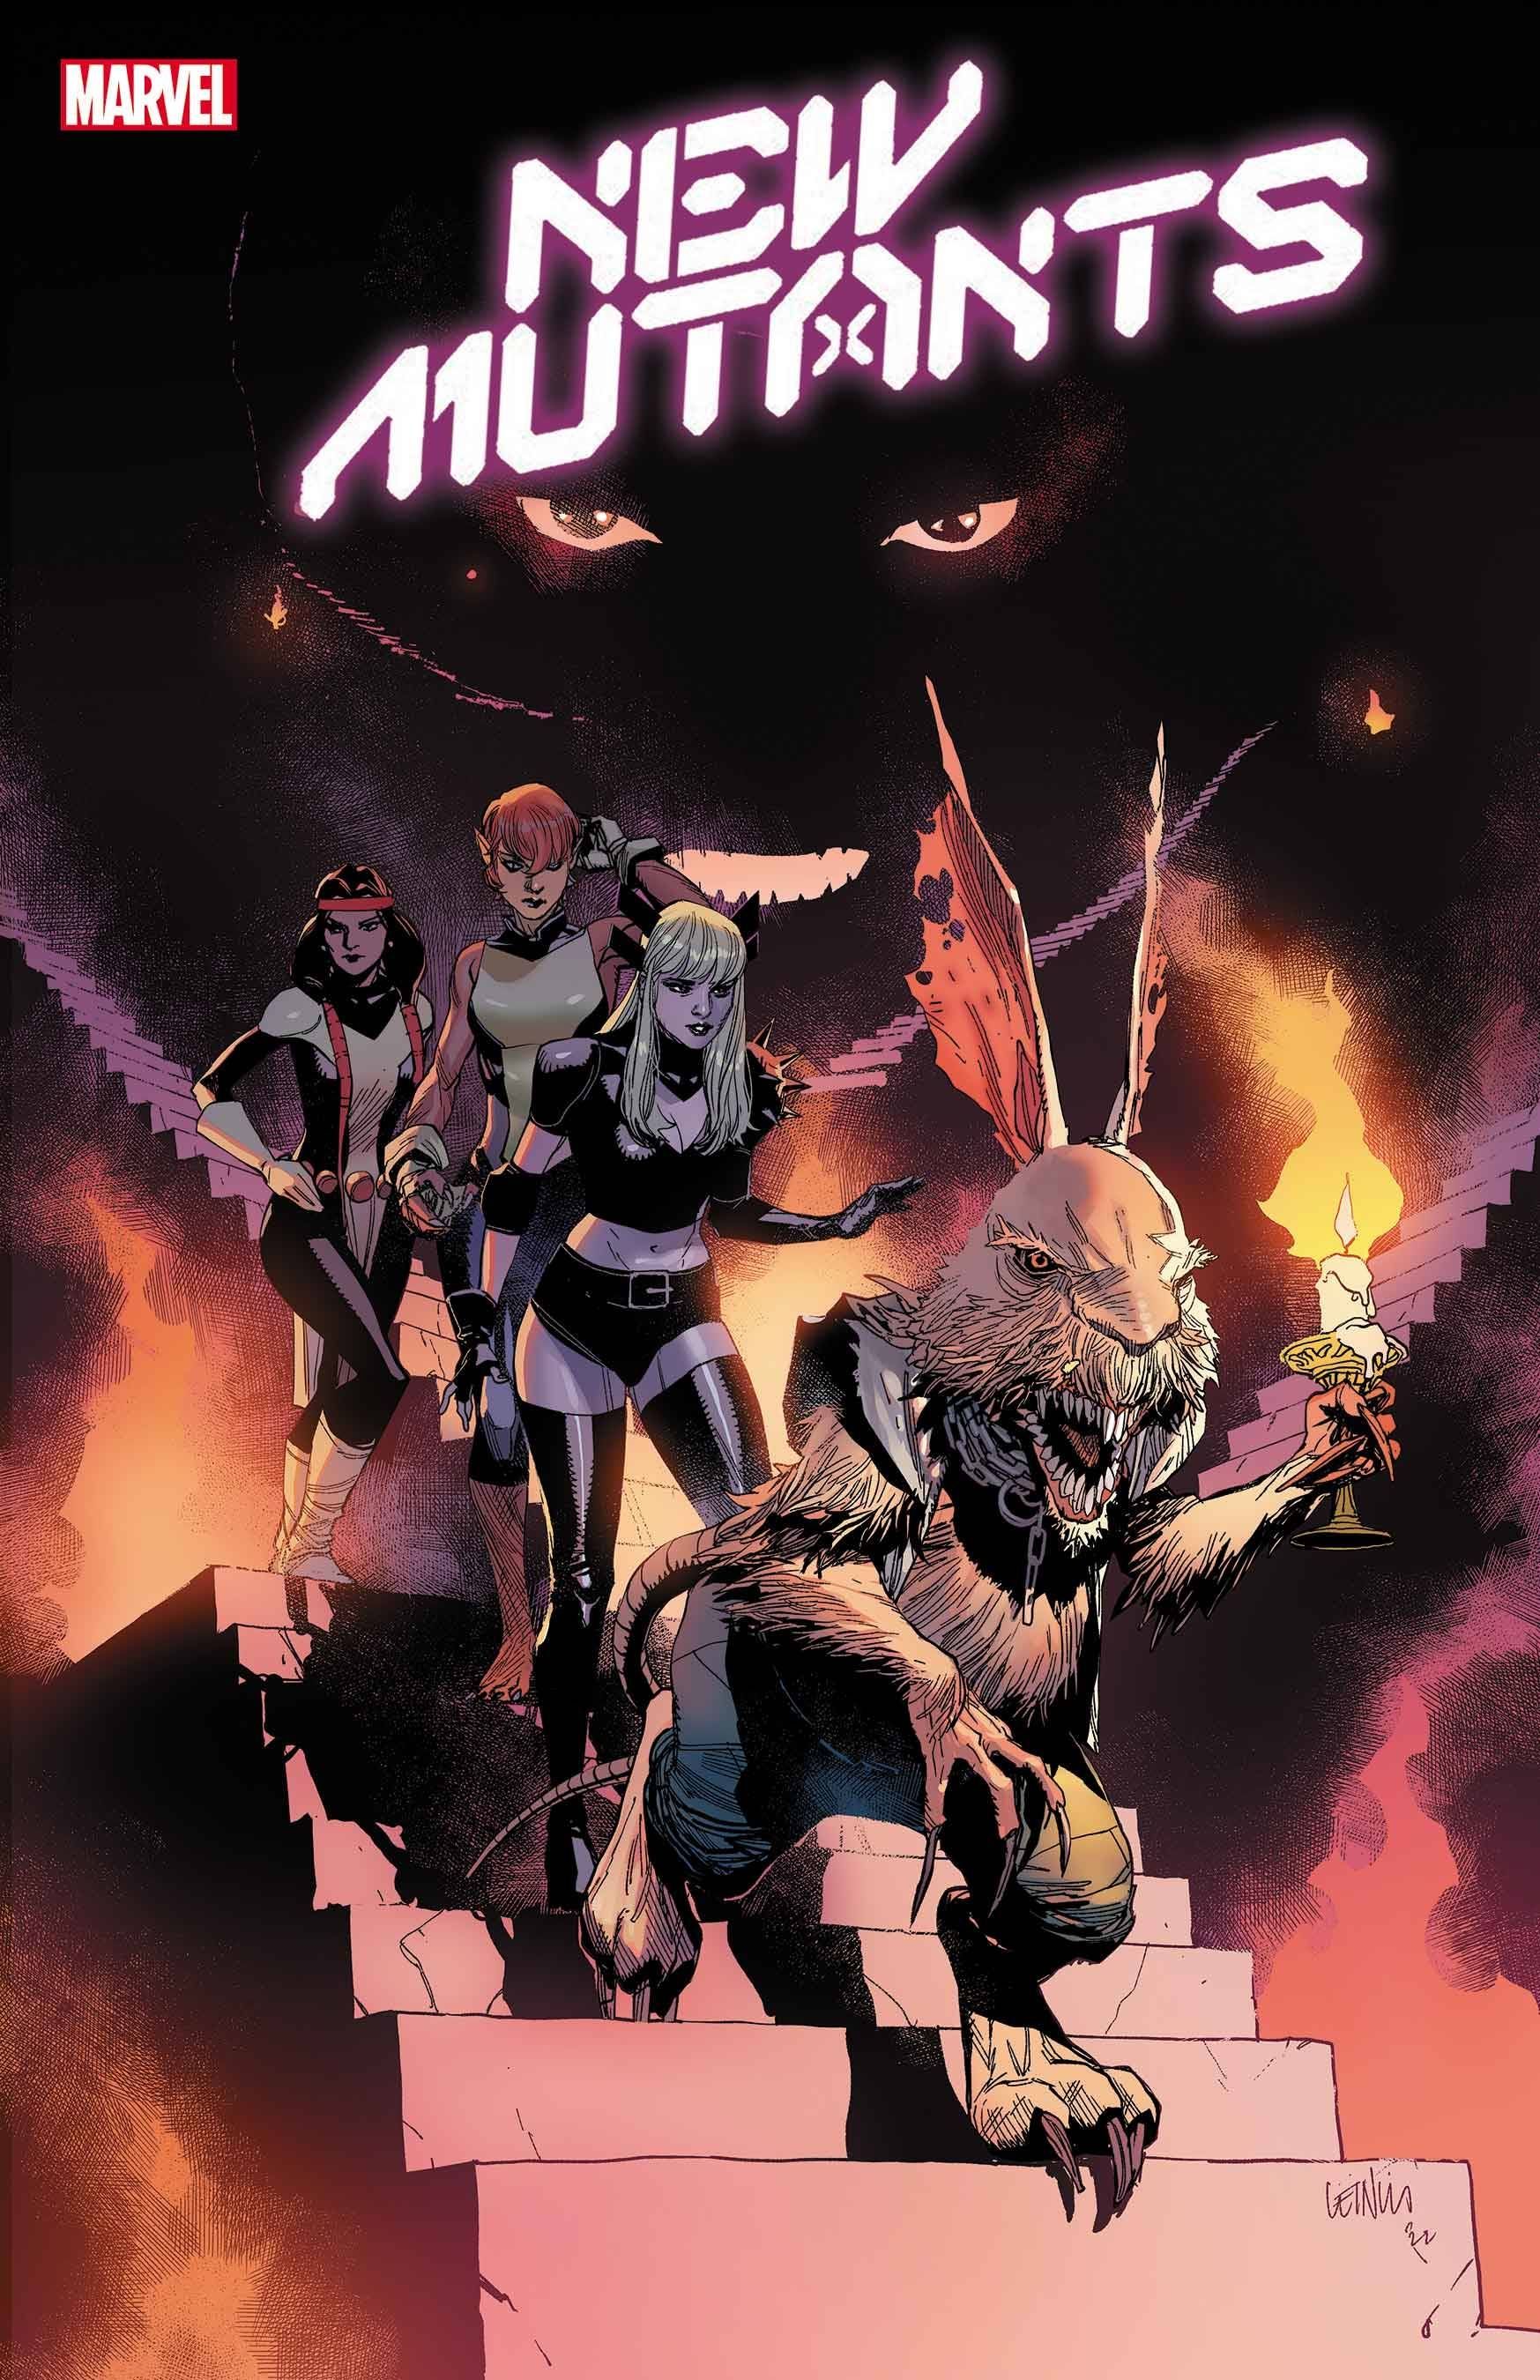 New Mutants #27 Comic